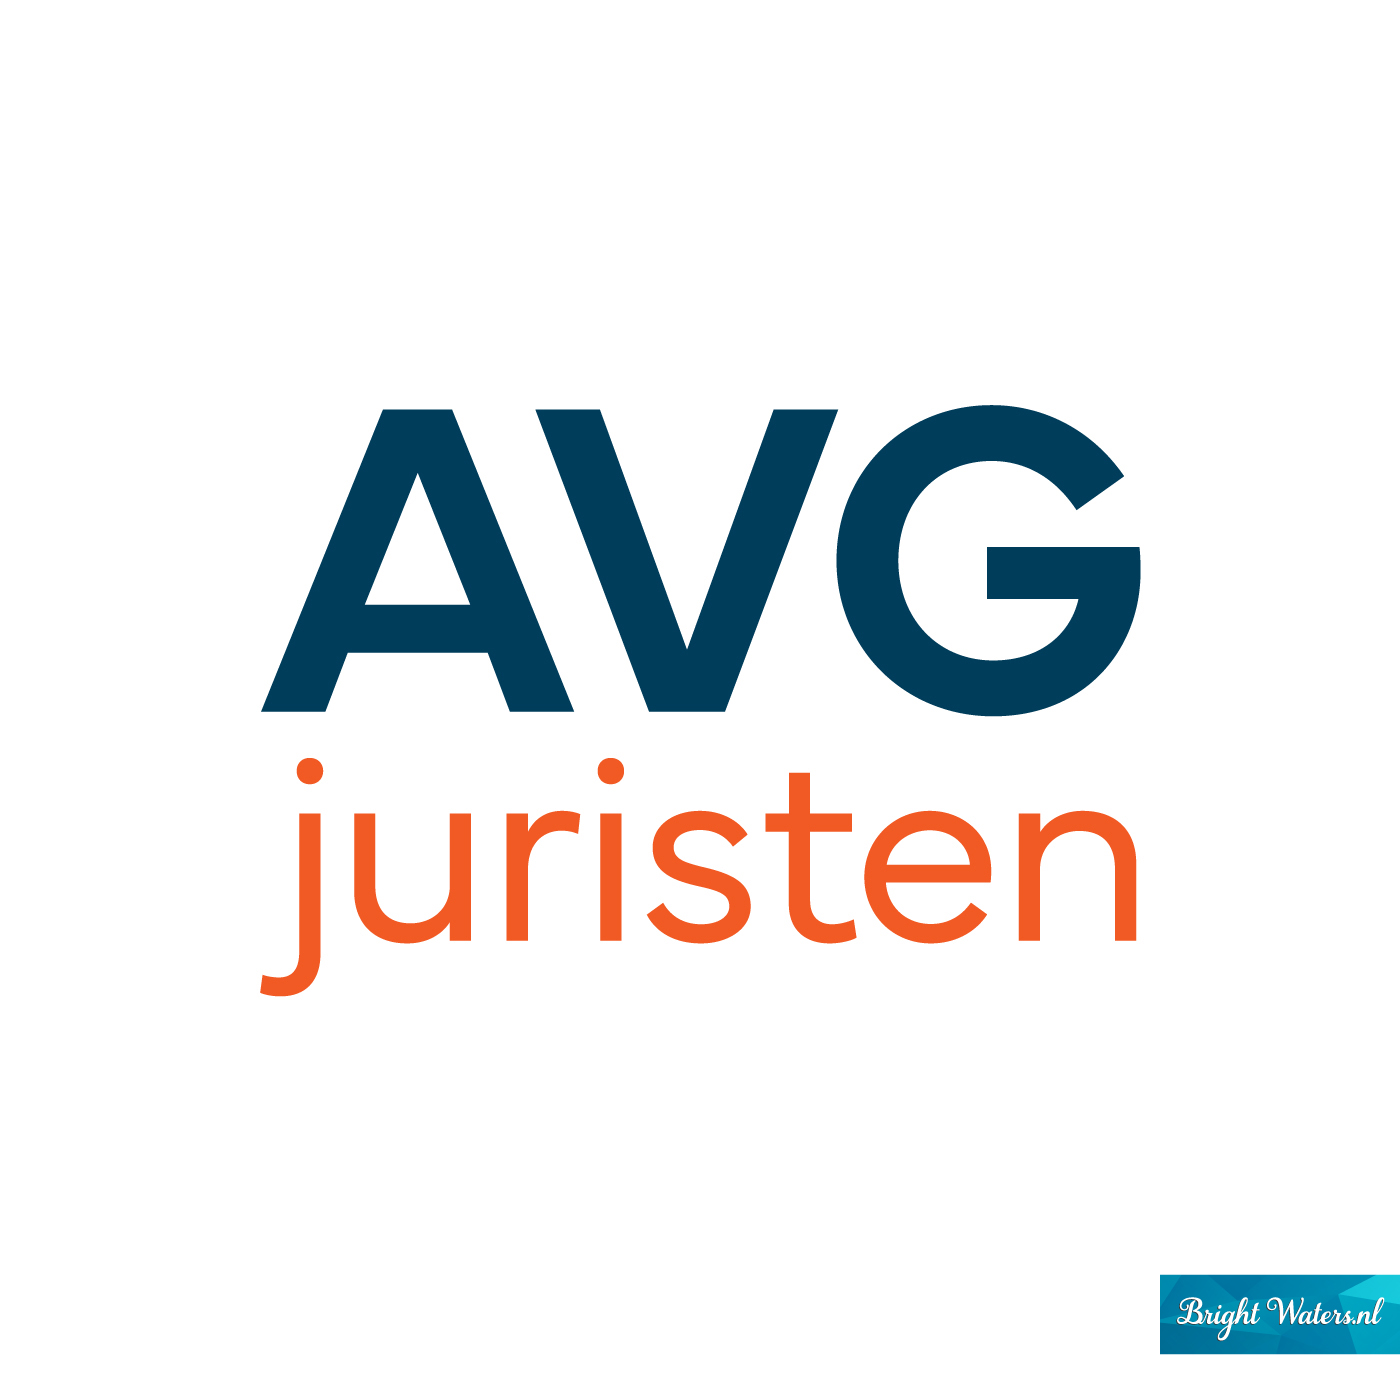 AVG Juristen - Logo.